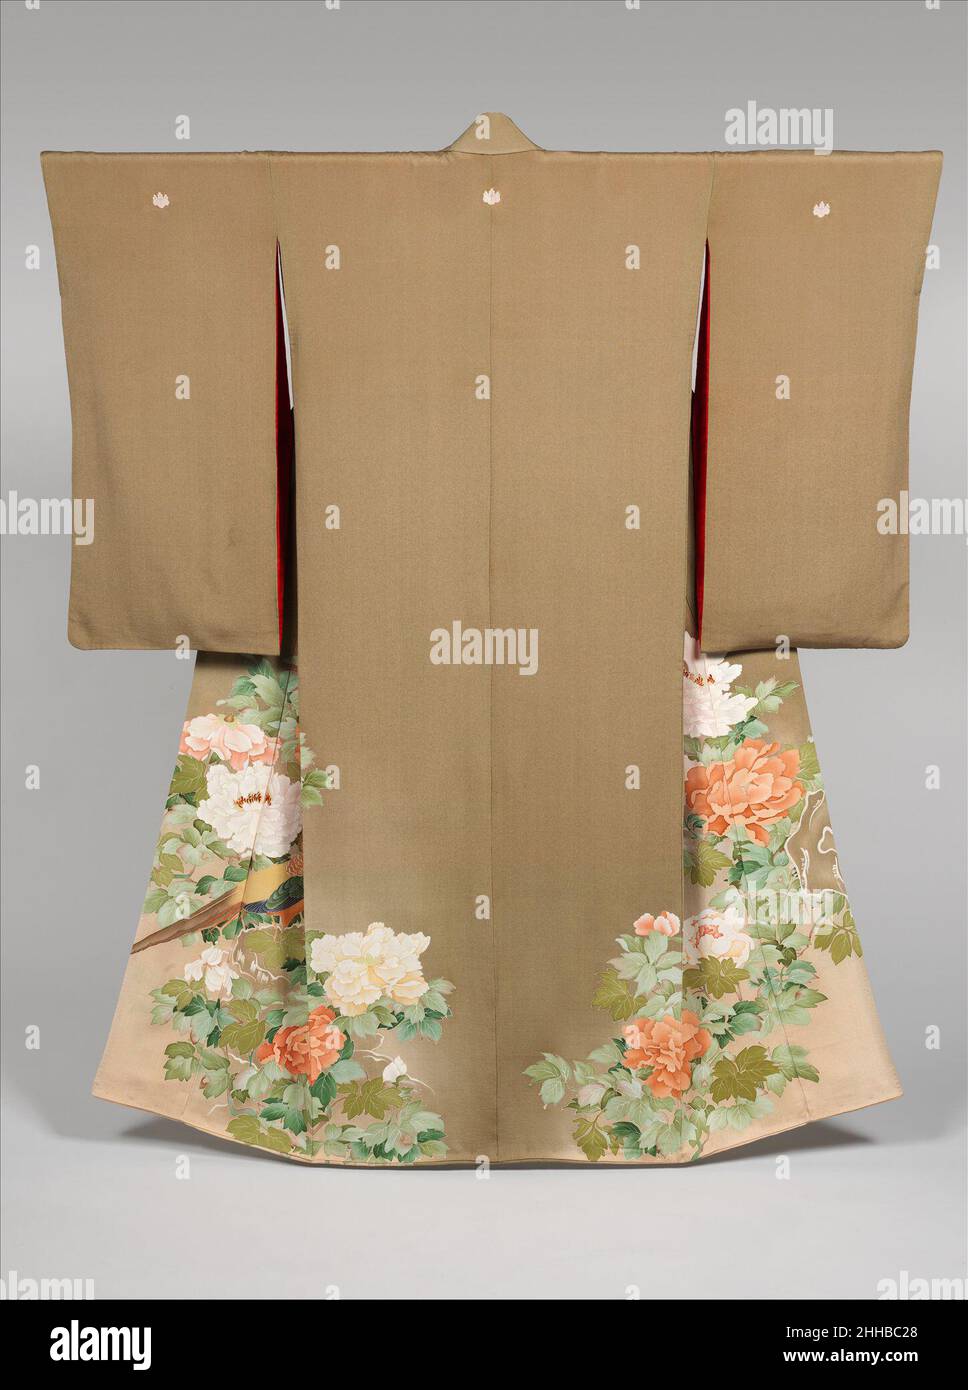 Kimono avec des faisans au milieu des pivoines la première moitié du Japon du 20th siècle des faisans et des pivoines de couleur vive apparaissent sur un terrain qui finisse délicatement de brun clair à beige, de haut en bas.La représentation des faisans au milieu du « roi des fleurs », comme les pivoines étaient connues en Asie de l'est, a une longue histoire dans les arts picturales japonais et est associée à l'été.Le motif de pivoine très prometteur est originaire de Chine et a commencé à apparaître dans les arts décoratifs japonais en combinaison avec des oiseaux à queue longue.Ici, des rochers, des oiseaux et des fleurs de couleur rose et abricot sont représentés sur le devant du kim Banque D'Images